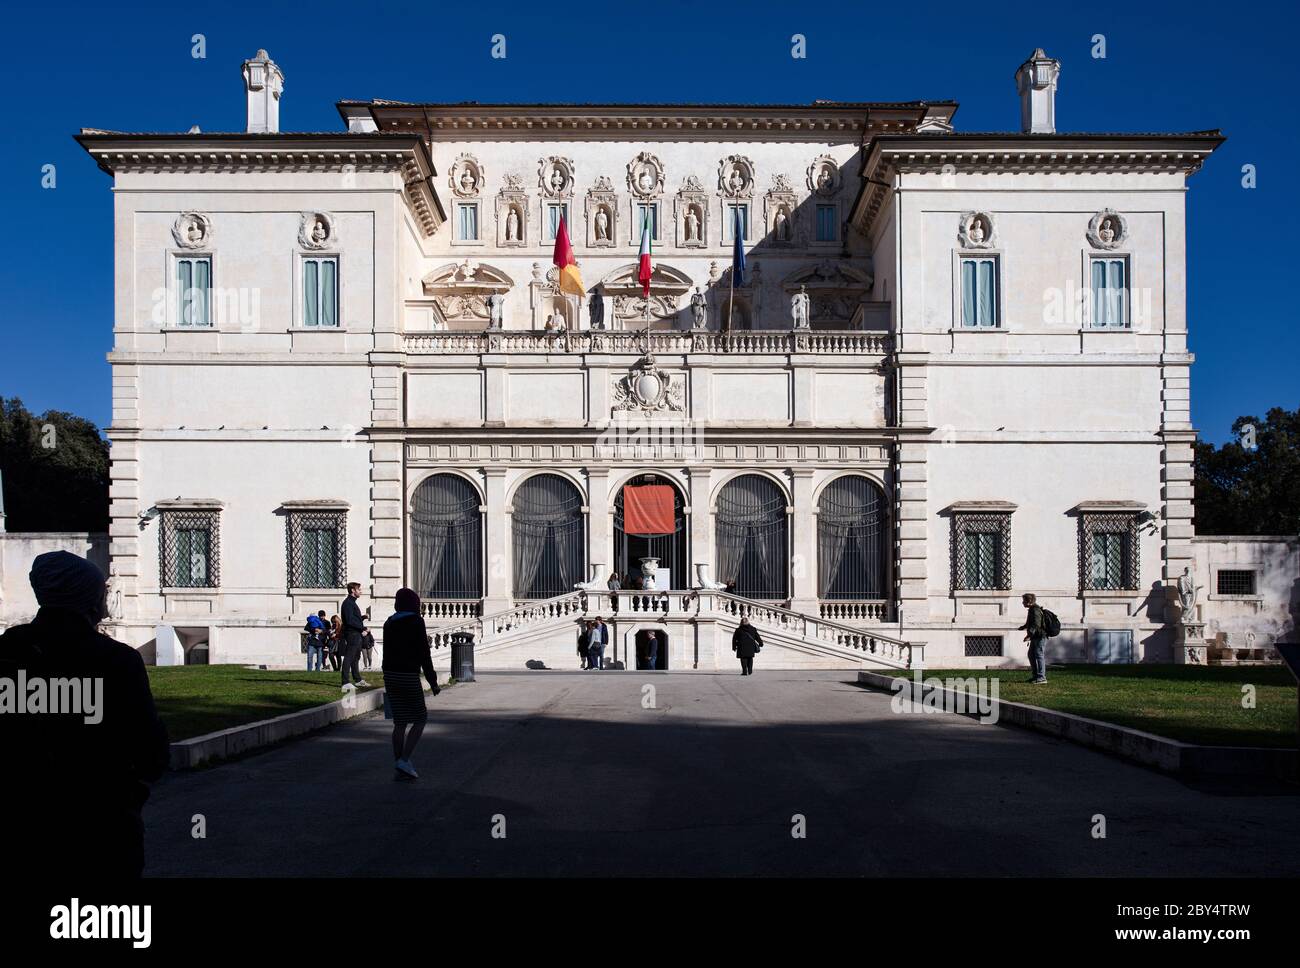 Die Fassade der Villa Borghese, ursprünglich die Vorstadtvilla von Scipione Borghese, heute die Galleria Borghese, in der sich eine Reihe berühmter Bernini-Statuen befinden Stockfoto